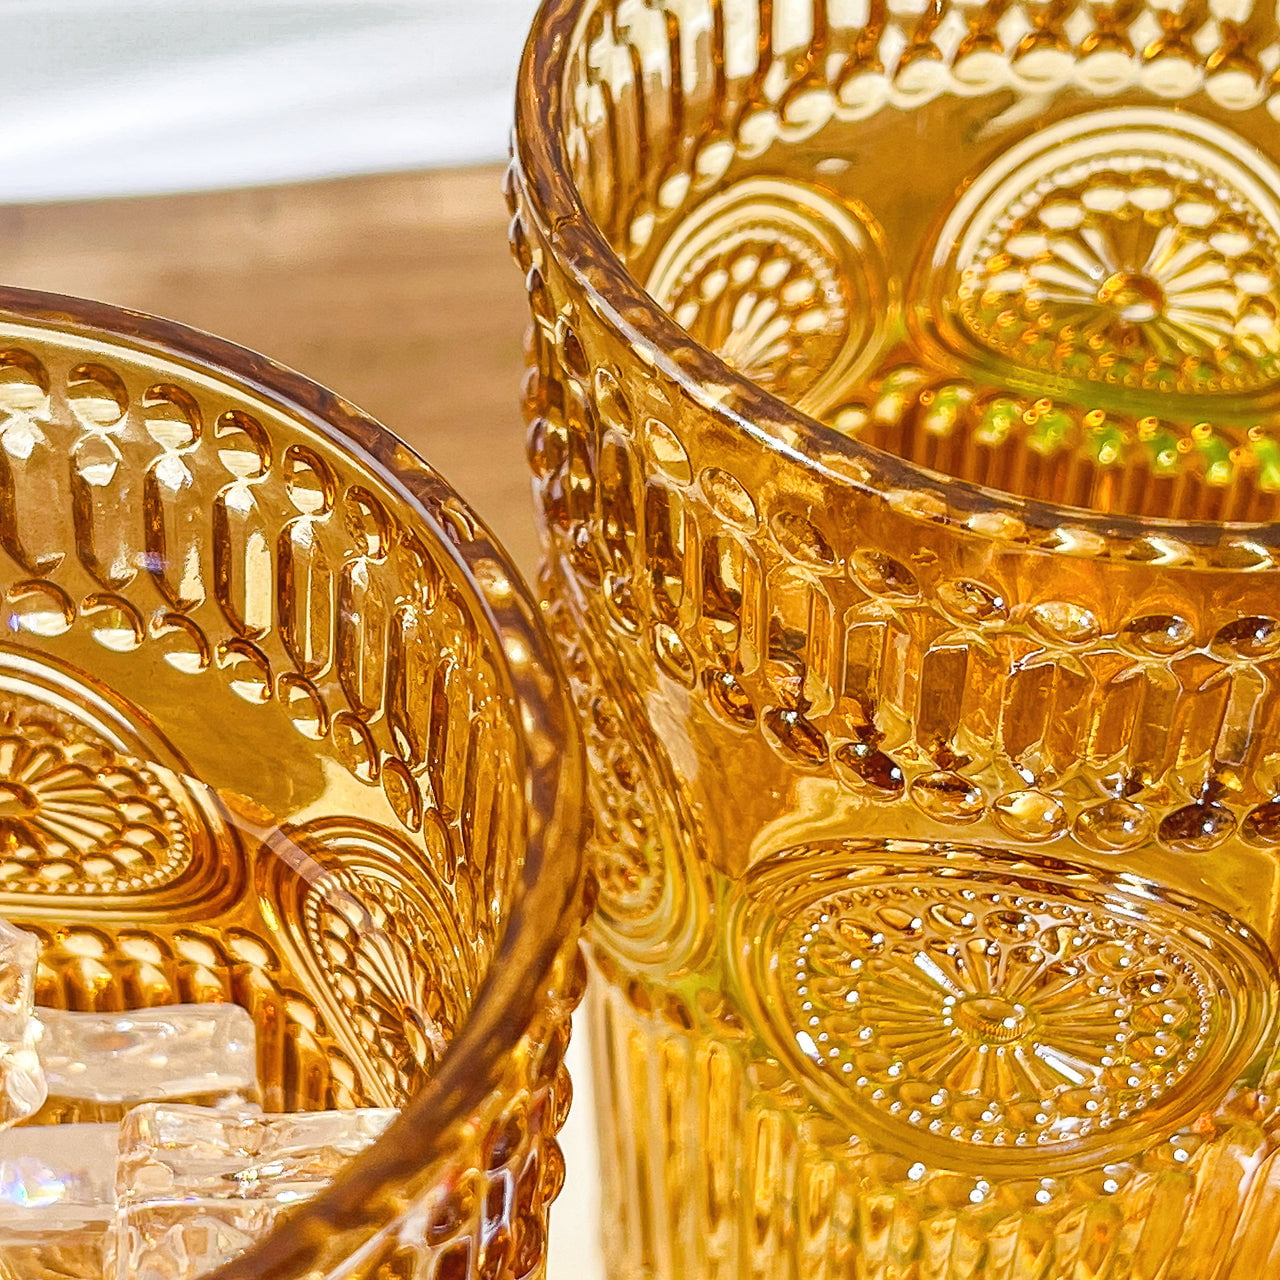 GoldArea Drinking Glasses Set of 6, 10oz Vintage Glassware, Glass  Cups,Water Glasses, Glasses Water …See more GoldArea Drinking Glasses Set  of 6, 10oz